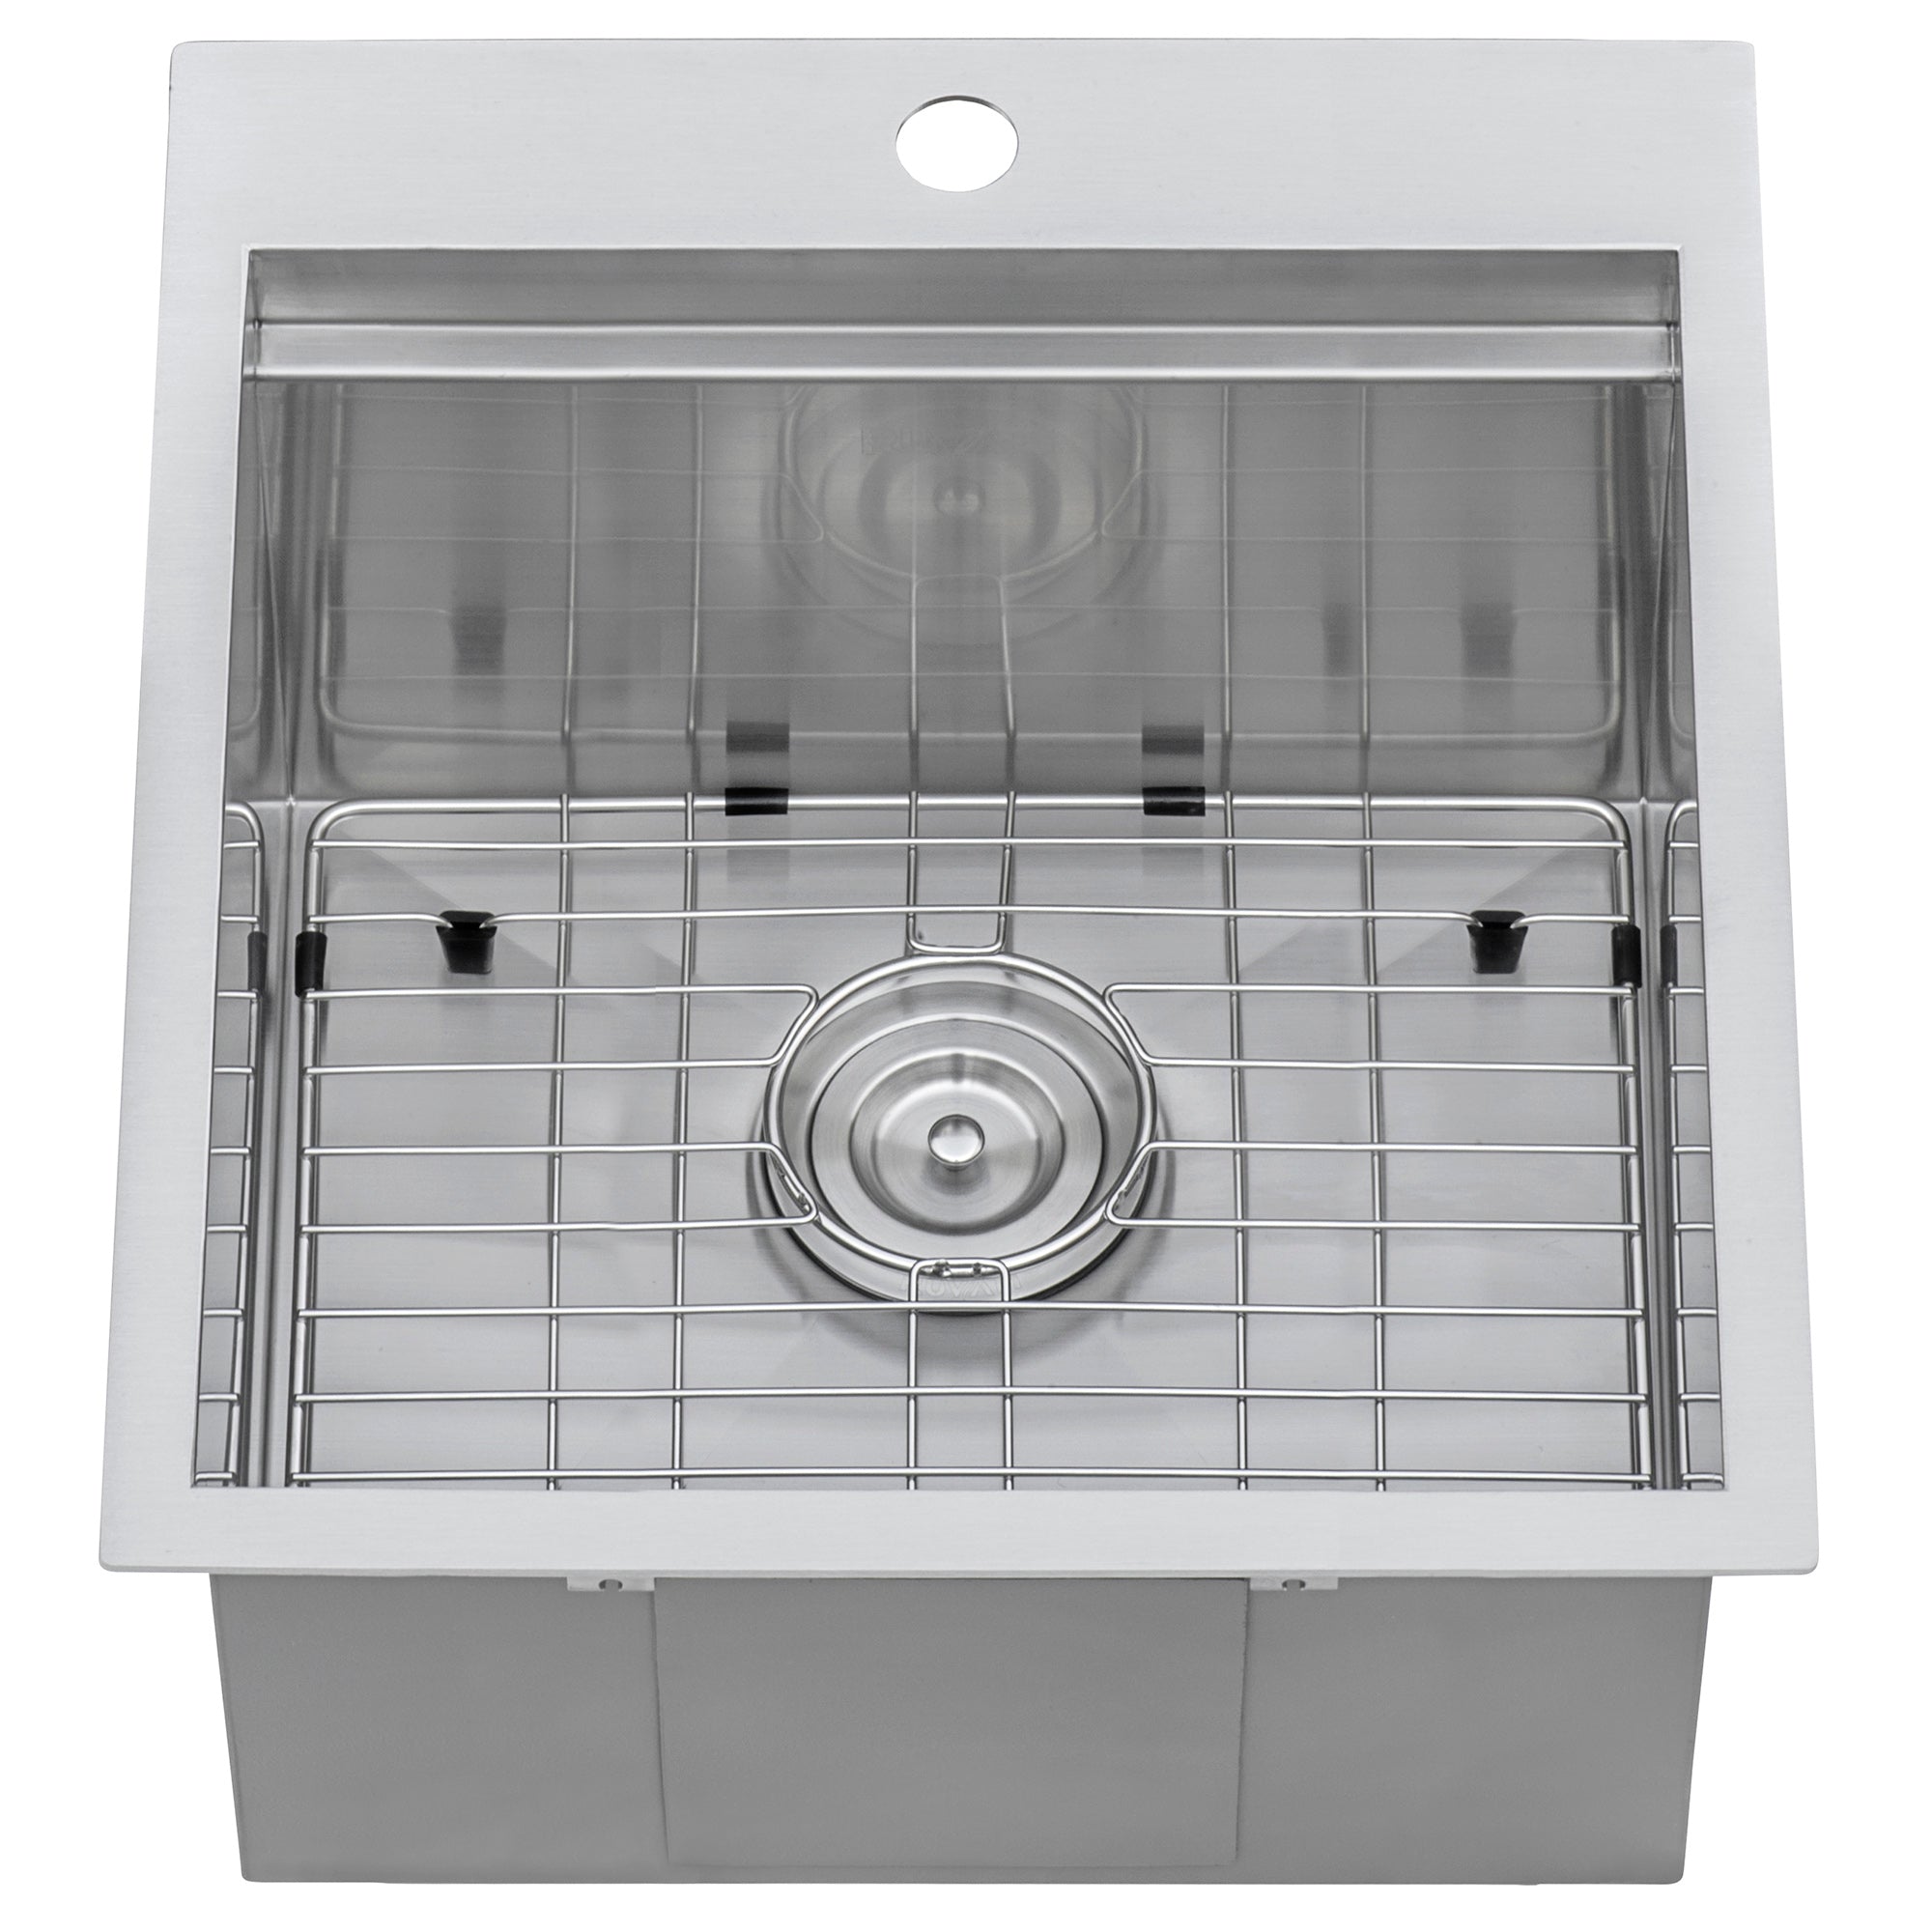 Ruvati RVH8221 21 x 20" RV Workstation Drop-in Topmount 16 Gauge Stainless Steel Bar Prep Kitchen Sink